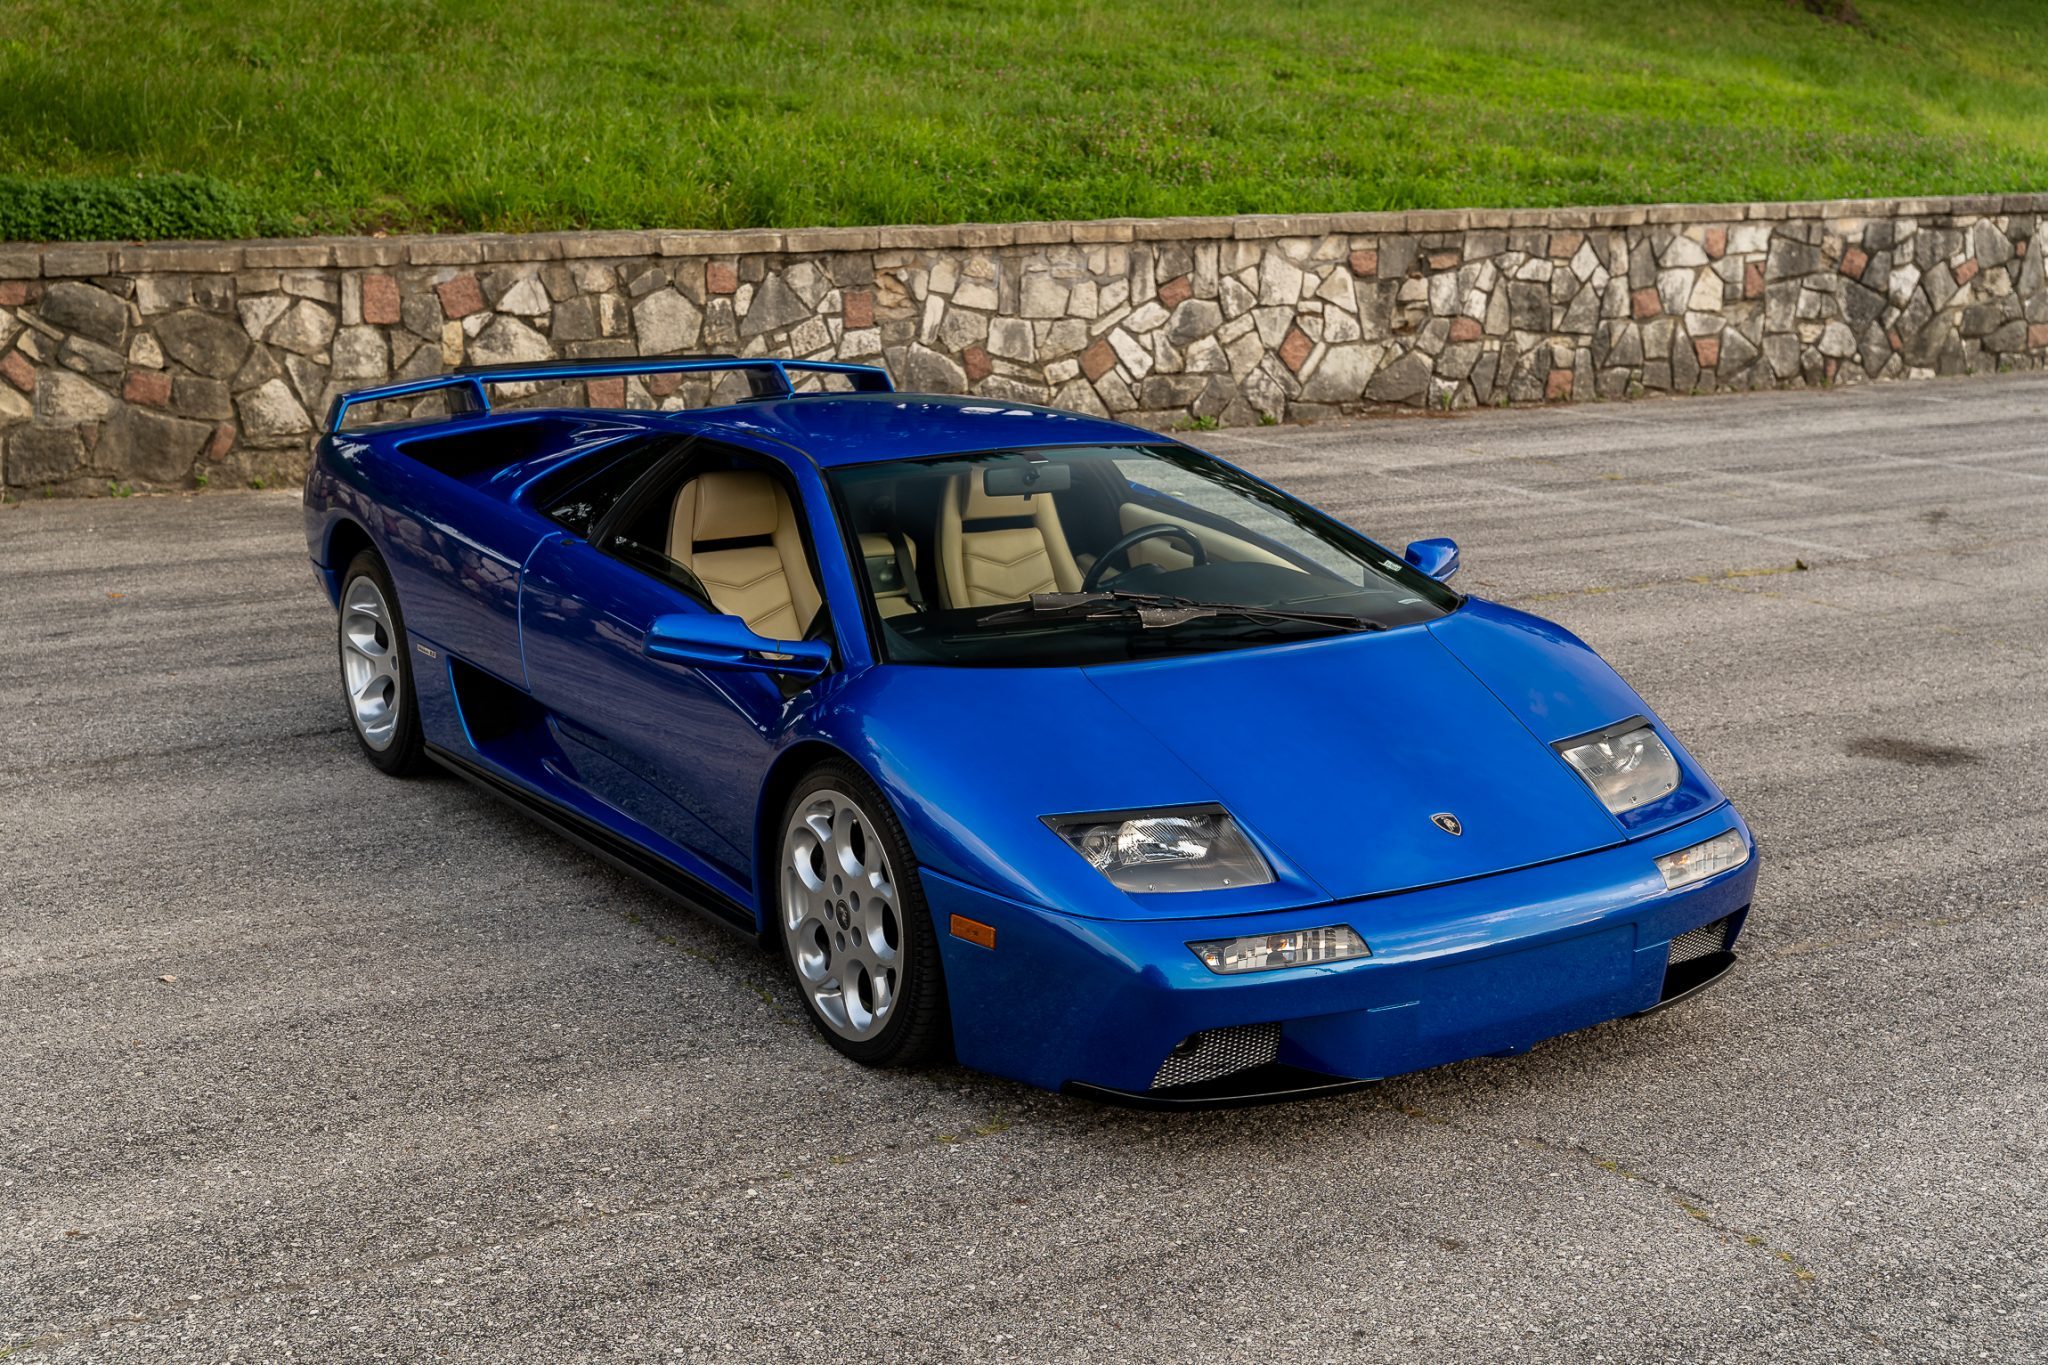 Lamborghini LM002 trafiło na sprzedaż. Ma 58 tys. km przebiegu i wysoką cenę